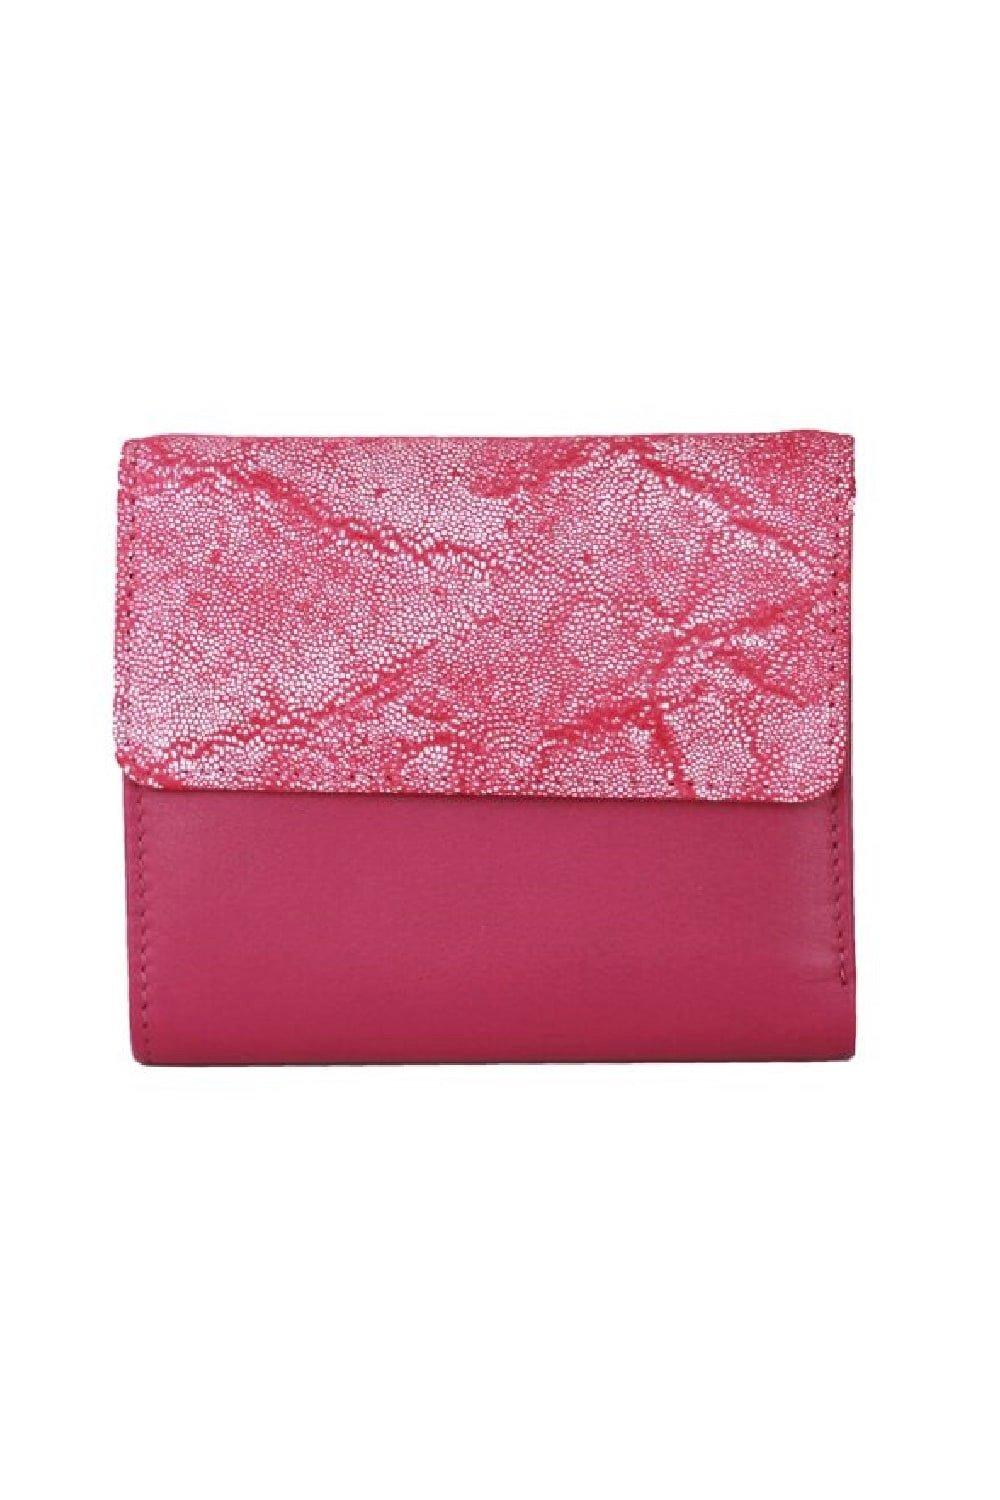 Кошелек с тиснением фольгой Eastern Counties Leather, розовый кожаный кошелек с d образным кольцом eastern counties leather красный